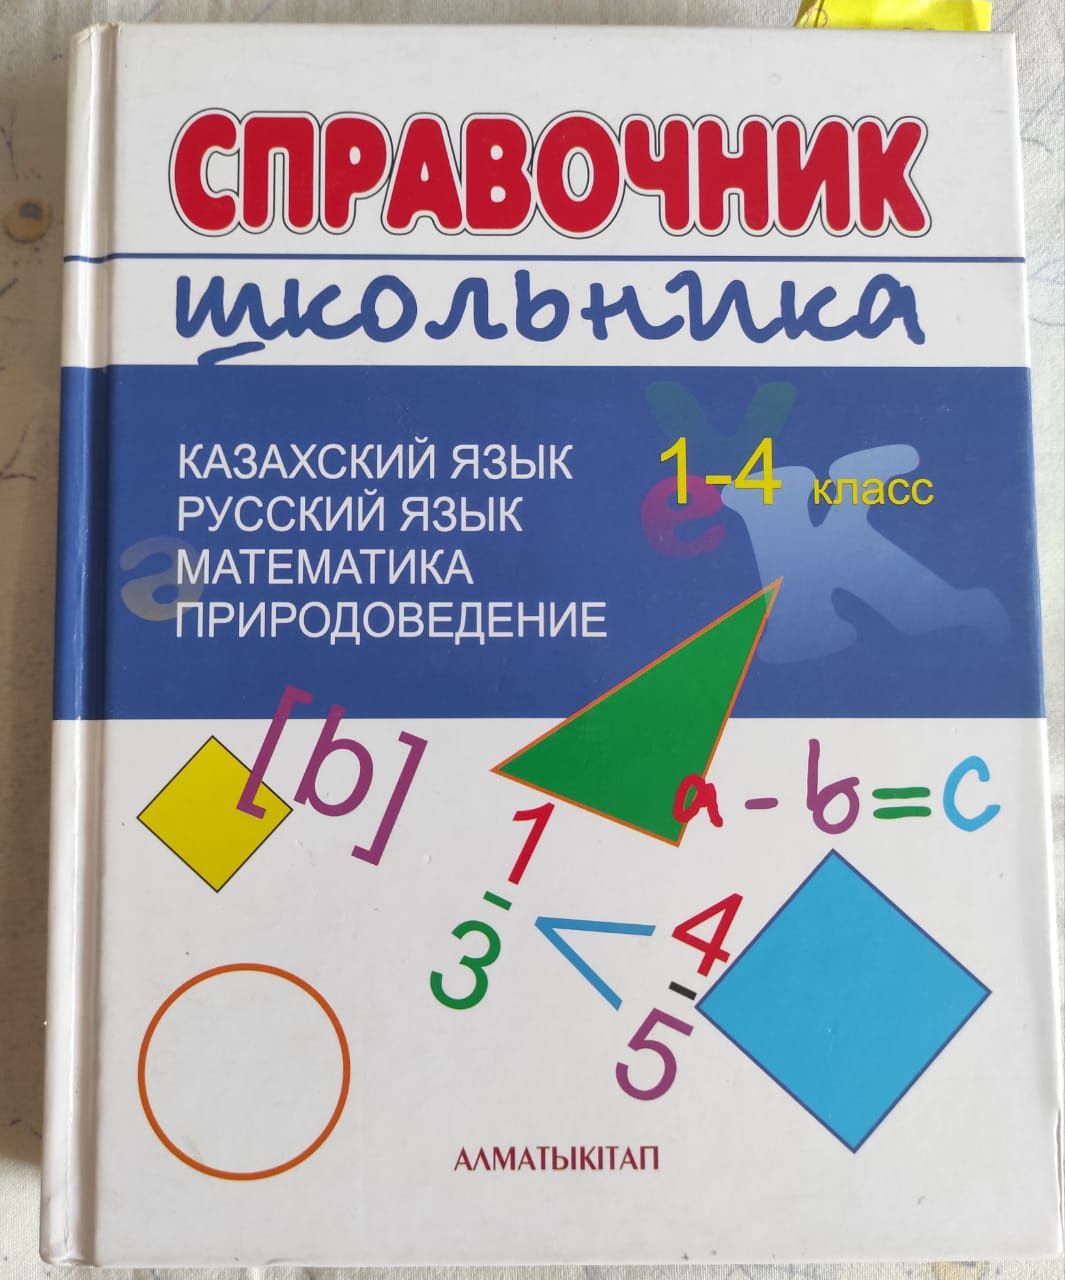 Продам справочник школьника для 1-4 класса